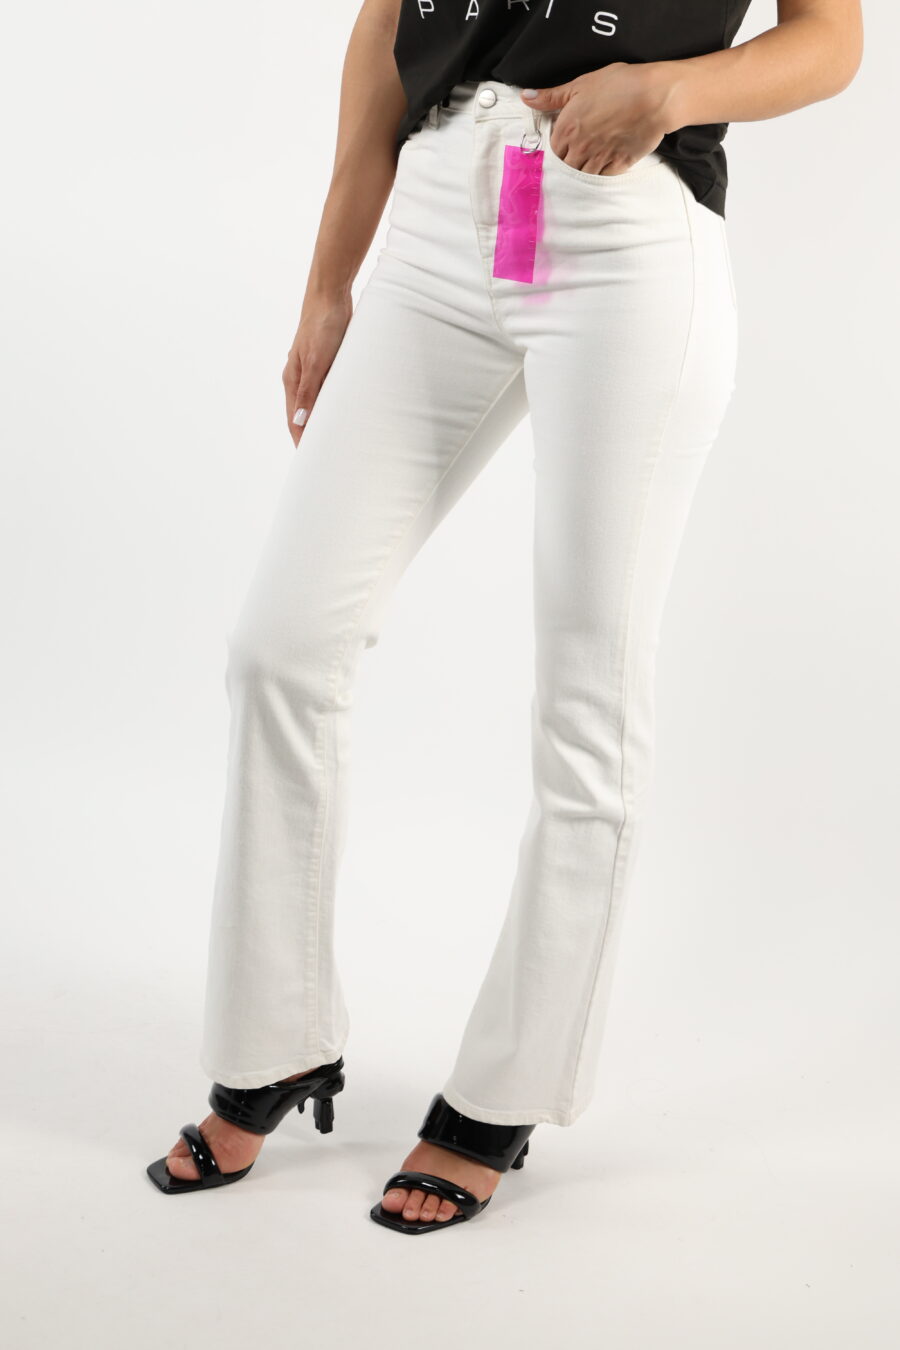 Pantalón blanco "Natie" con etiqueta fucsia - 110672